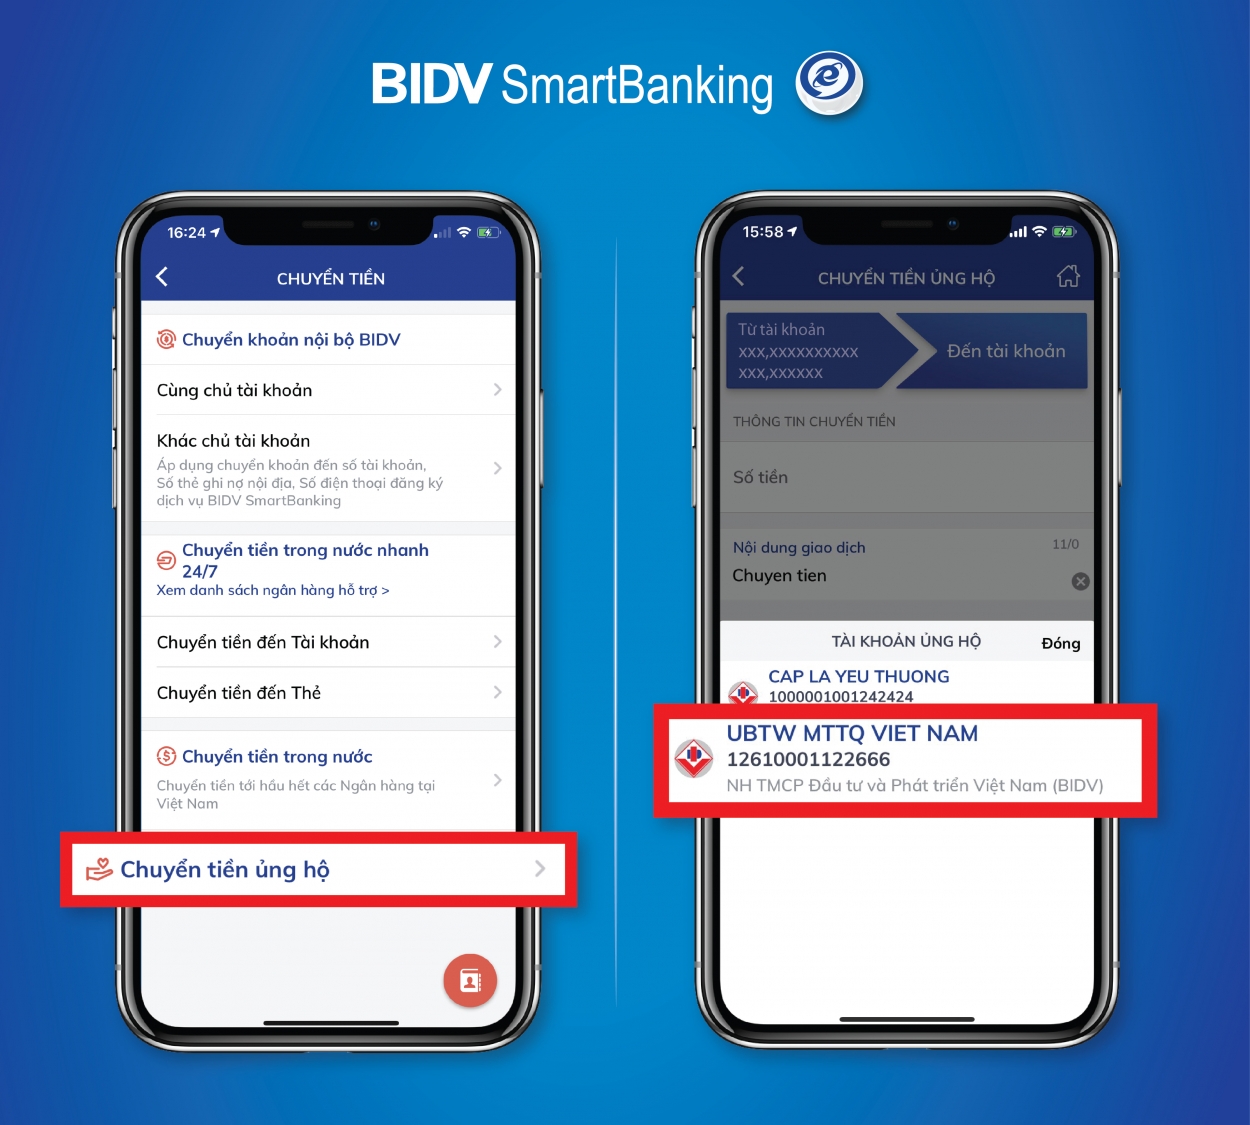 Tài khoản của UBTƯ MTTQ Việt Nam đã được tích hợp sẵn trên ứng dụng BIDV Smartbanking